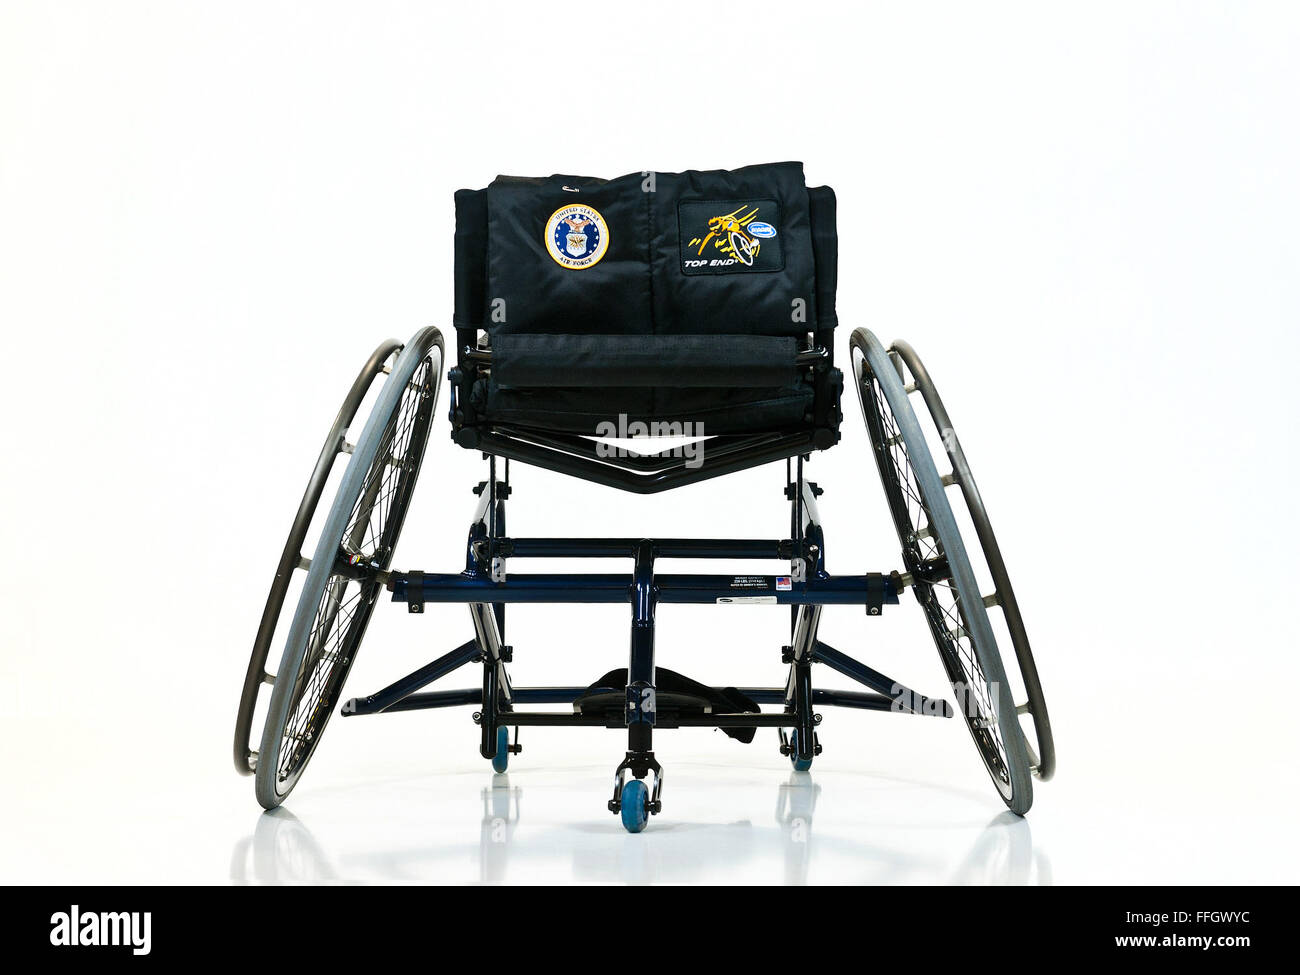 Die Air-Force-Team nutzt Rollstühle wie dieser in der Rollstuhl-Basketball-Veranstaltungen. Freiwillige aus rehabilitative Ausrüstungsfirmen stehen zur Verfügung während der Krieger Spiele, für den Fall, dass Geräte beschädigt und Reparaturen erforderlich sind. Stockfoto